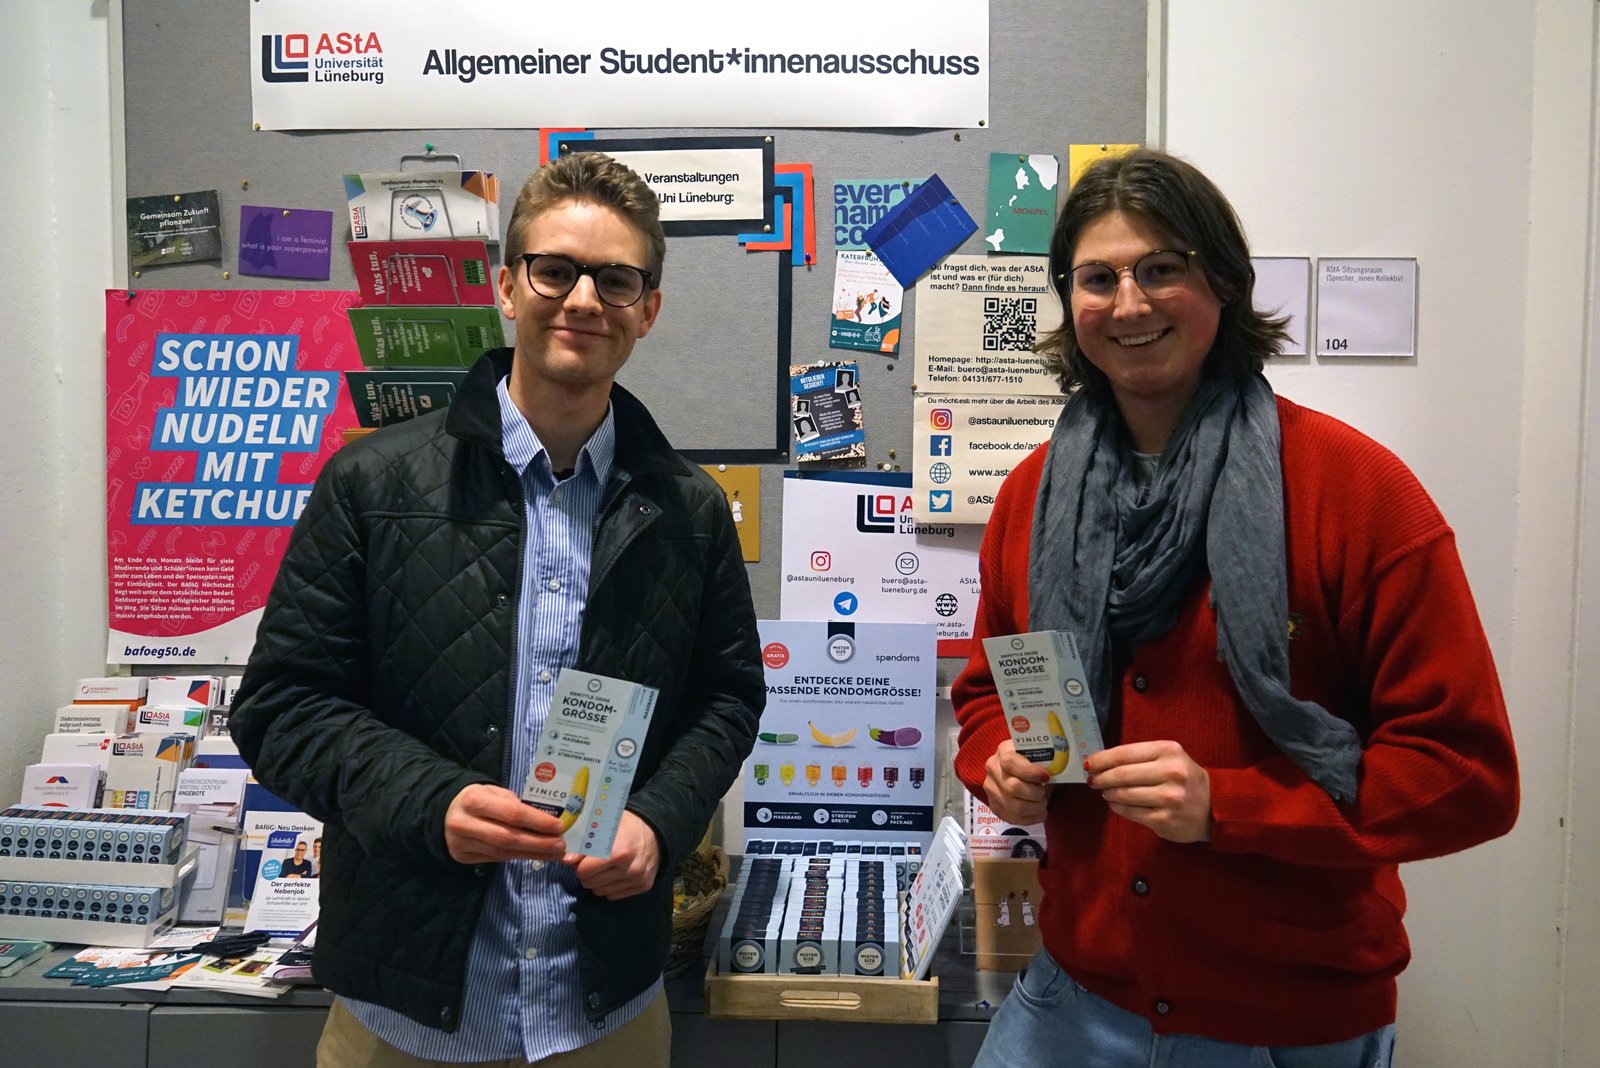 Luis iz Spondomsa (lijevo) otvara besplatni dozator kondoma zajedno s Maxom iz AStA Sveučilišta Leuphana Lüneburg (desno).